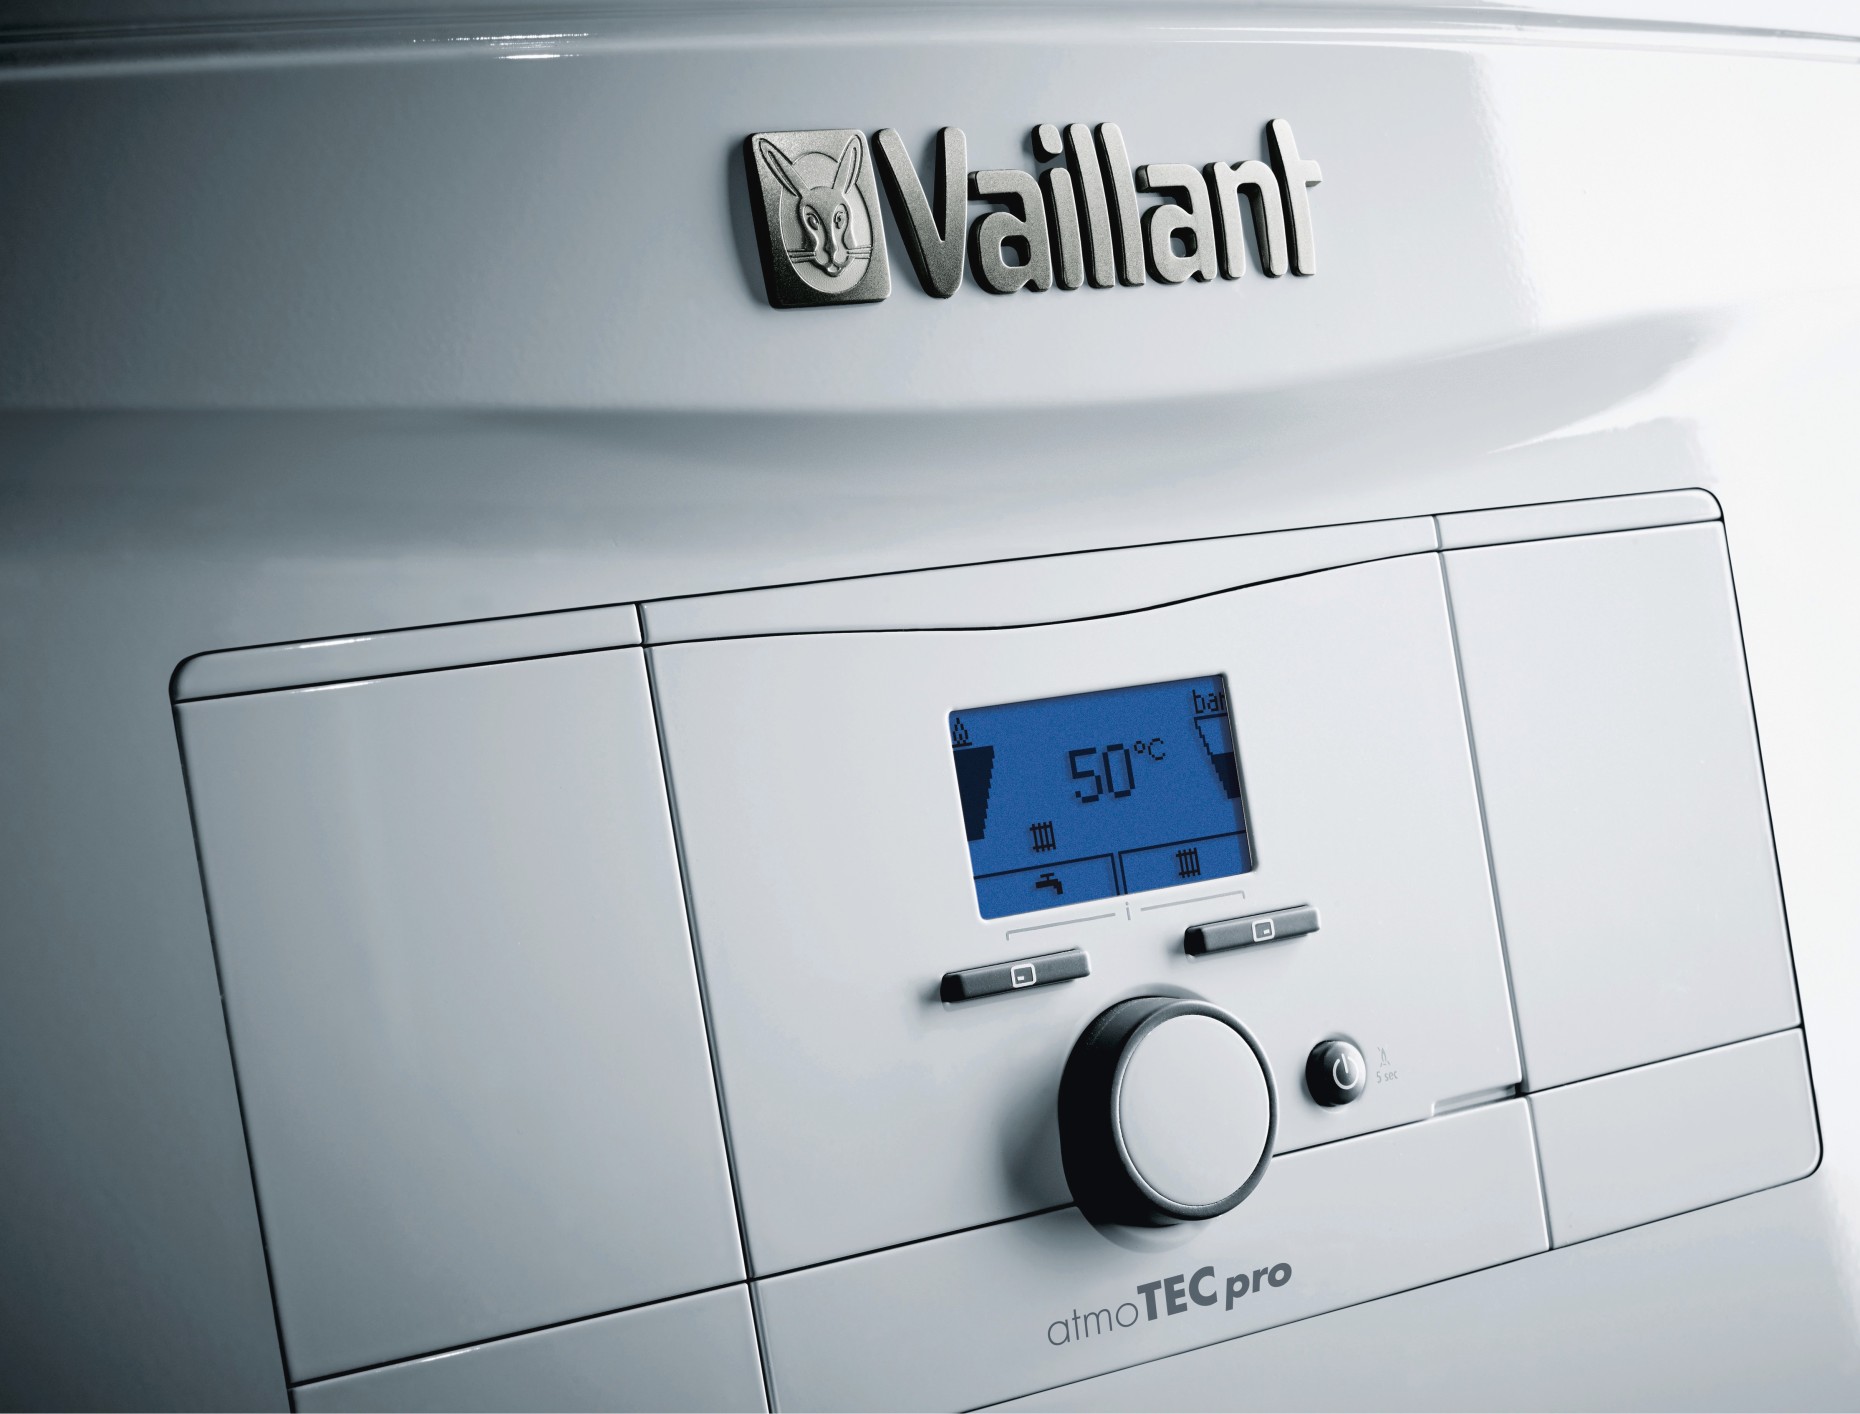 Газовый котел Vaillant atmoTec Pro VUW 200/5-3 цена 35100.00 грн - фотография 2